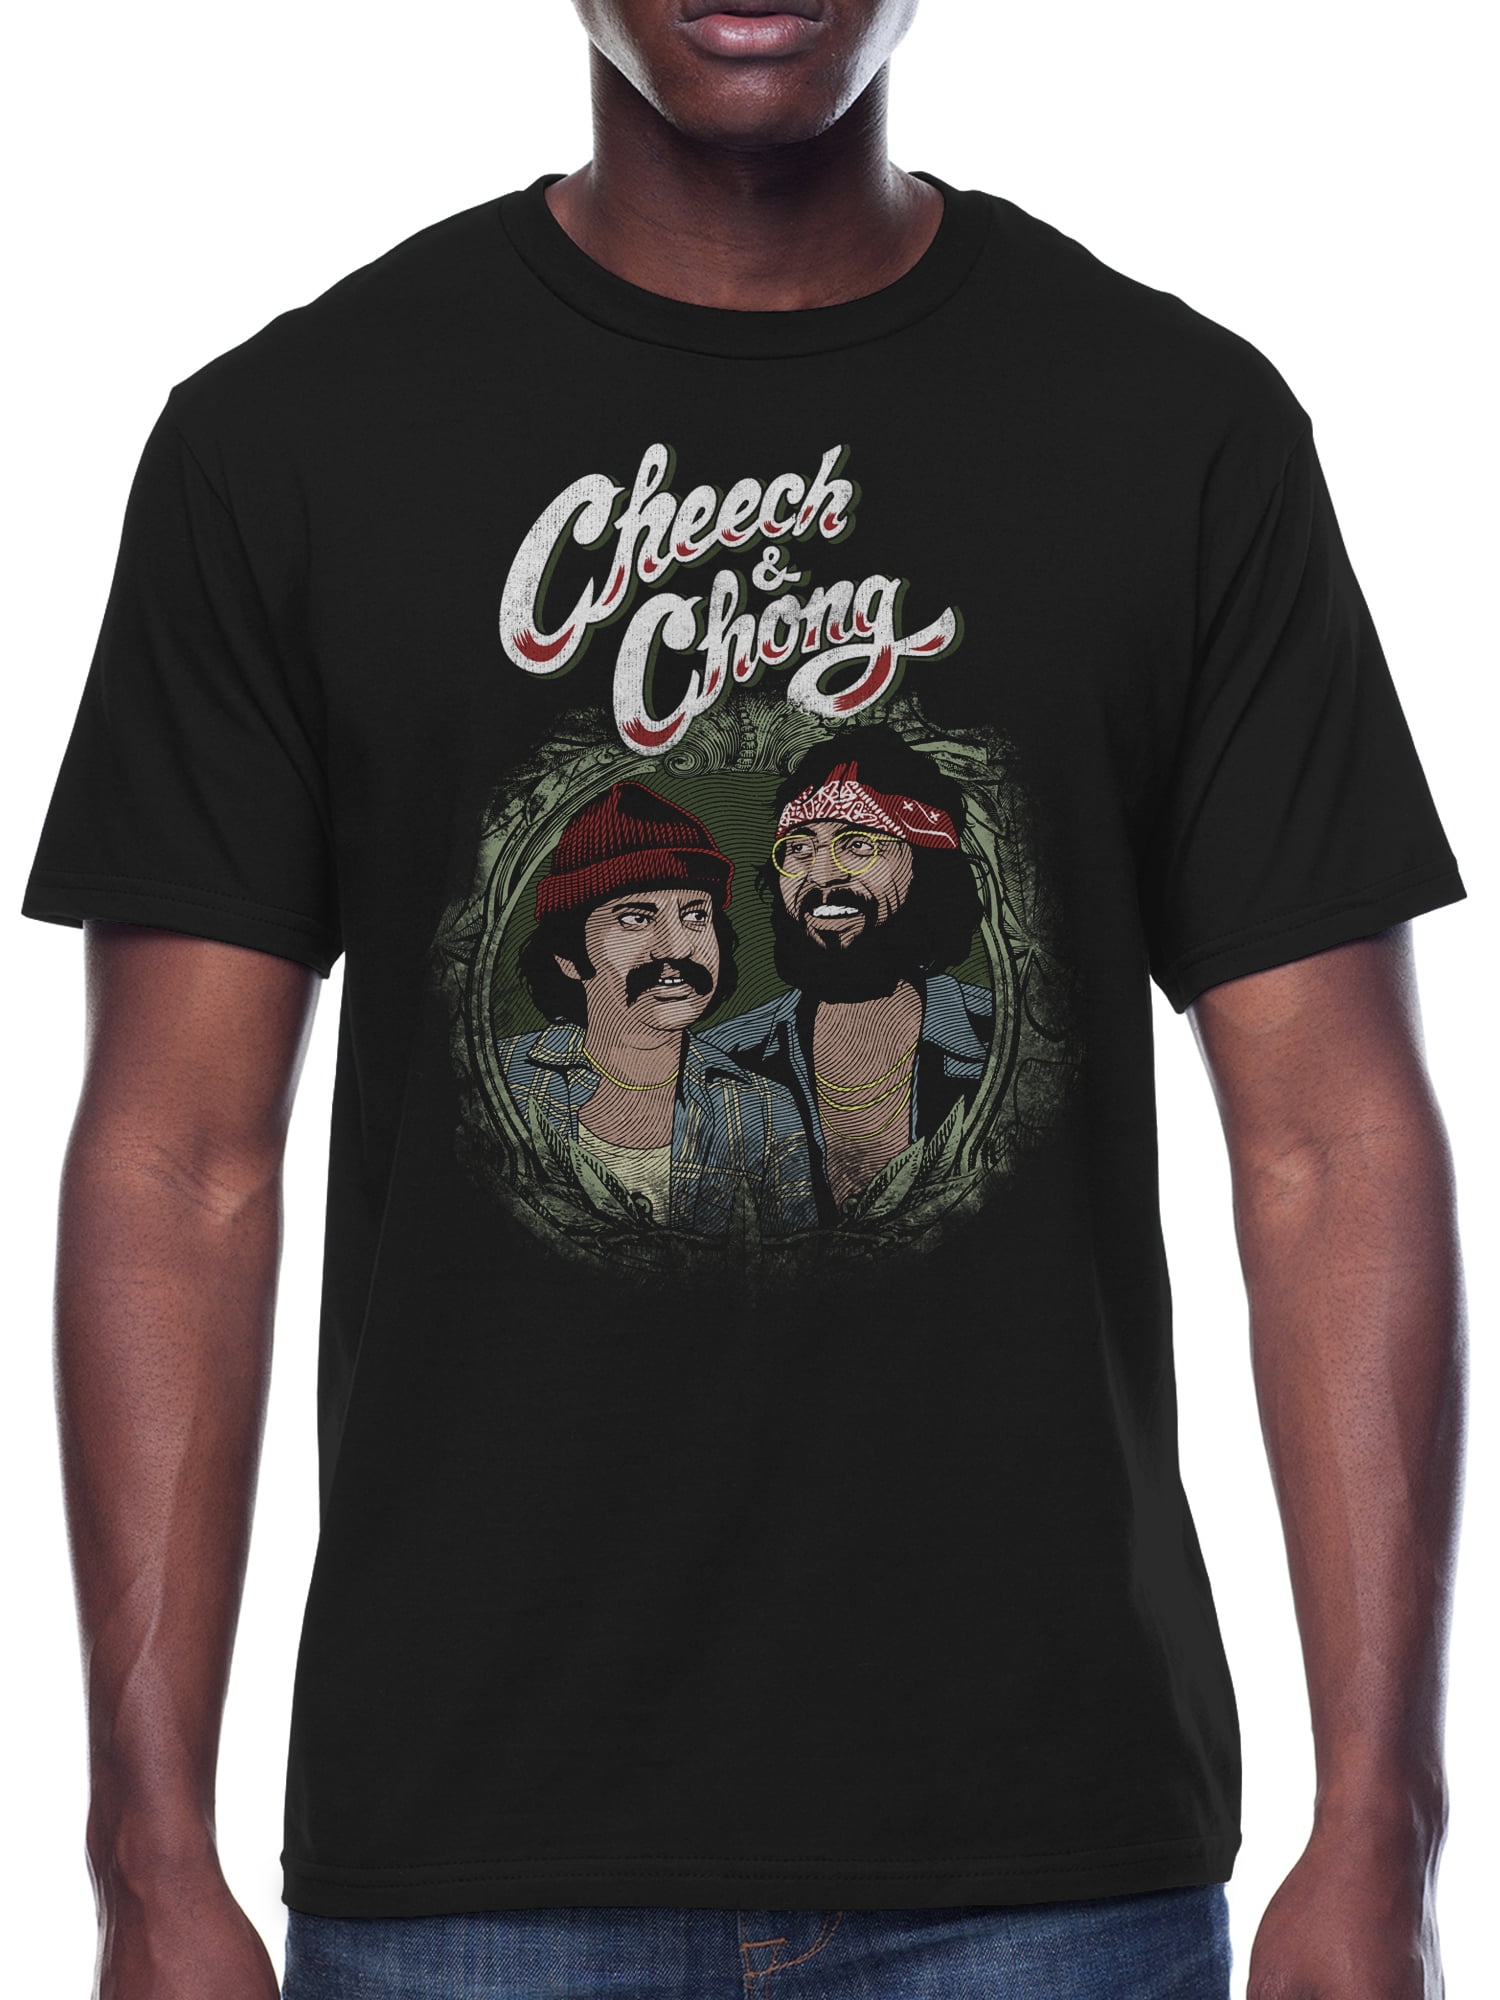 Cheech and Chong100% Cotton Men's Size Medium Tee Shirt